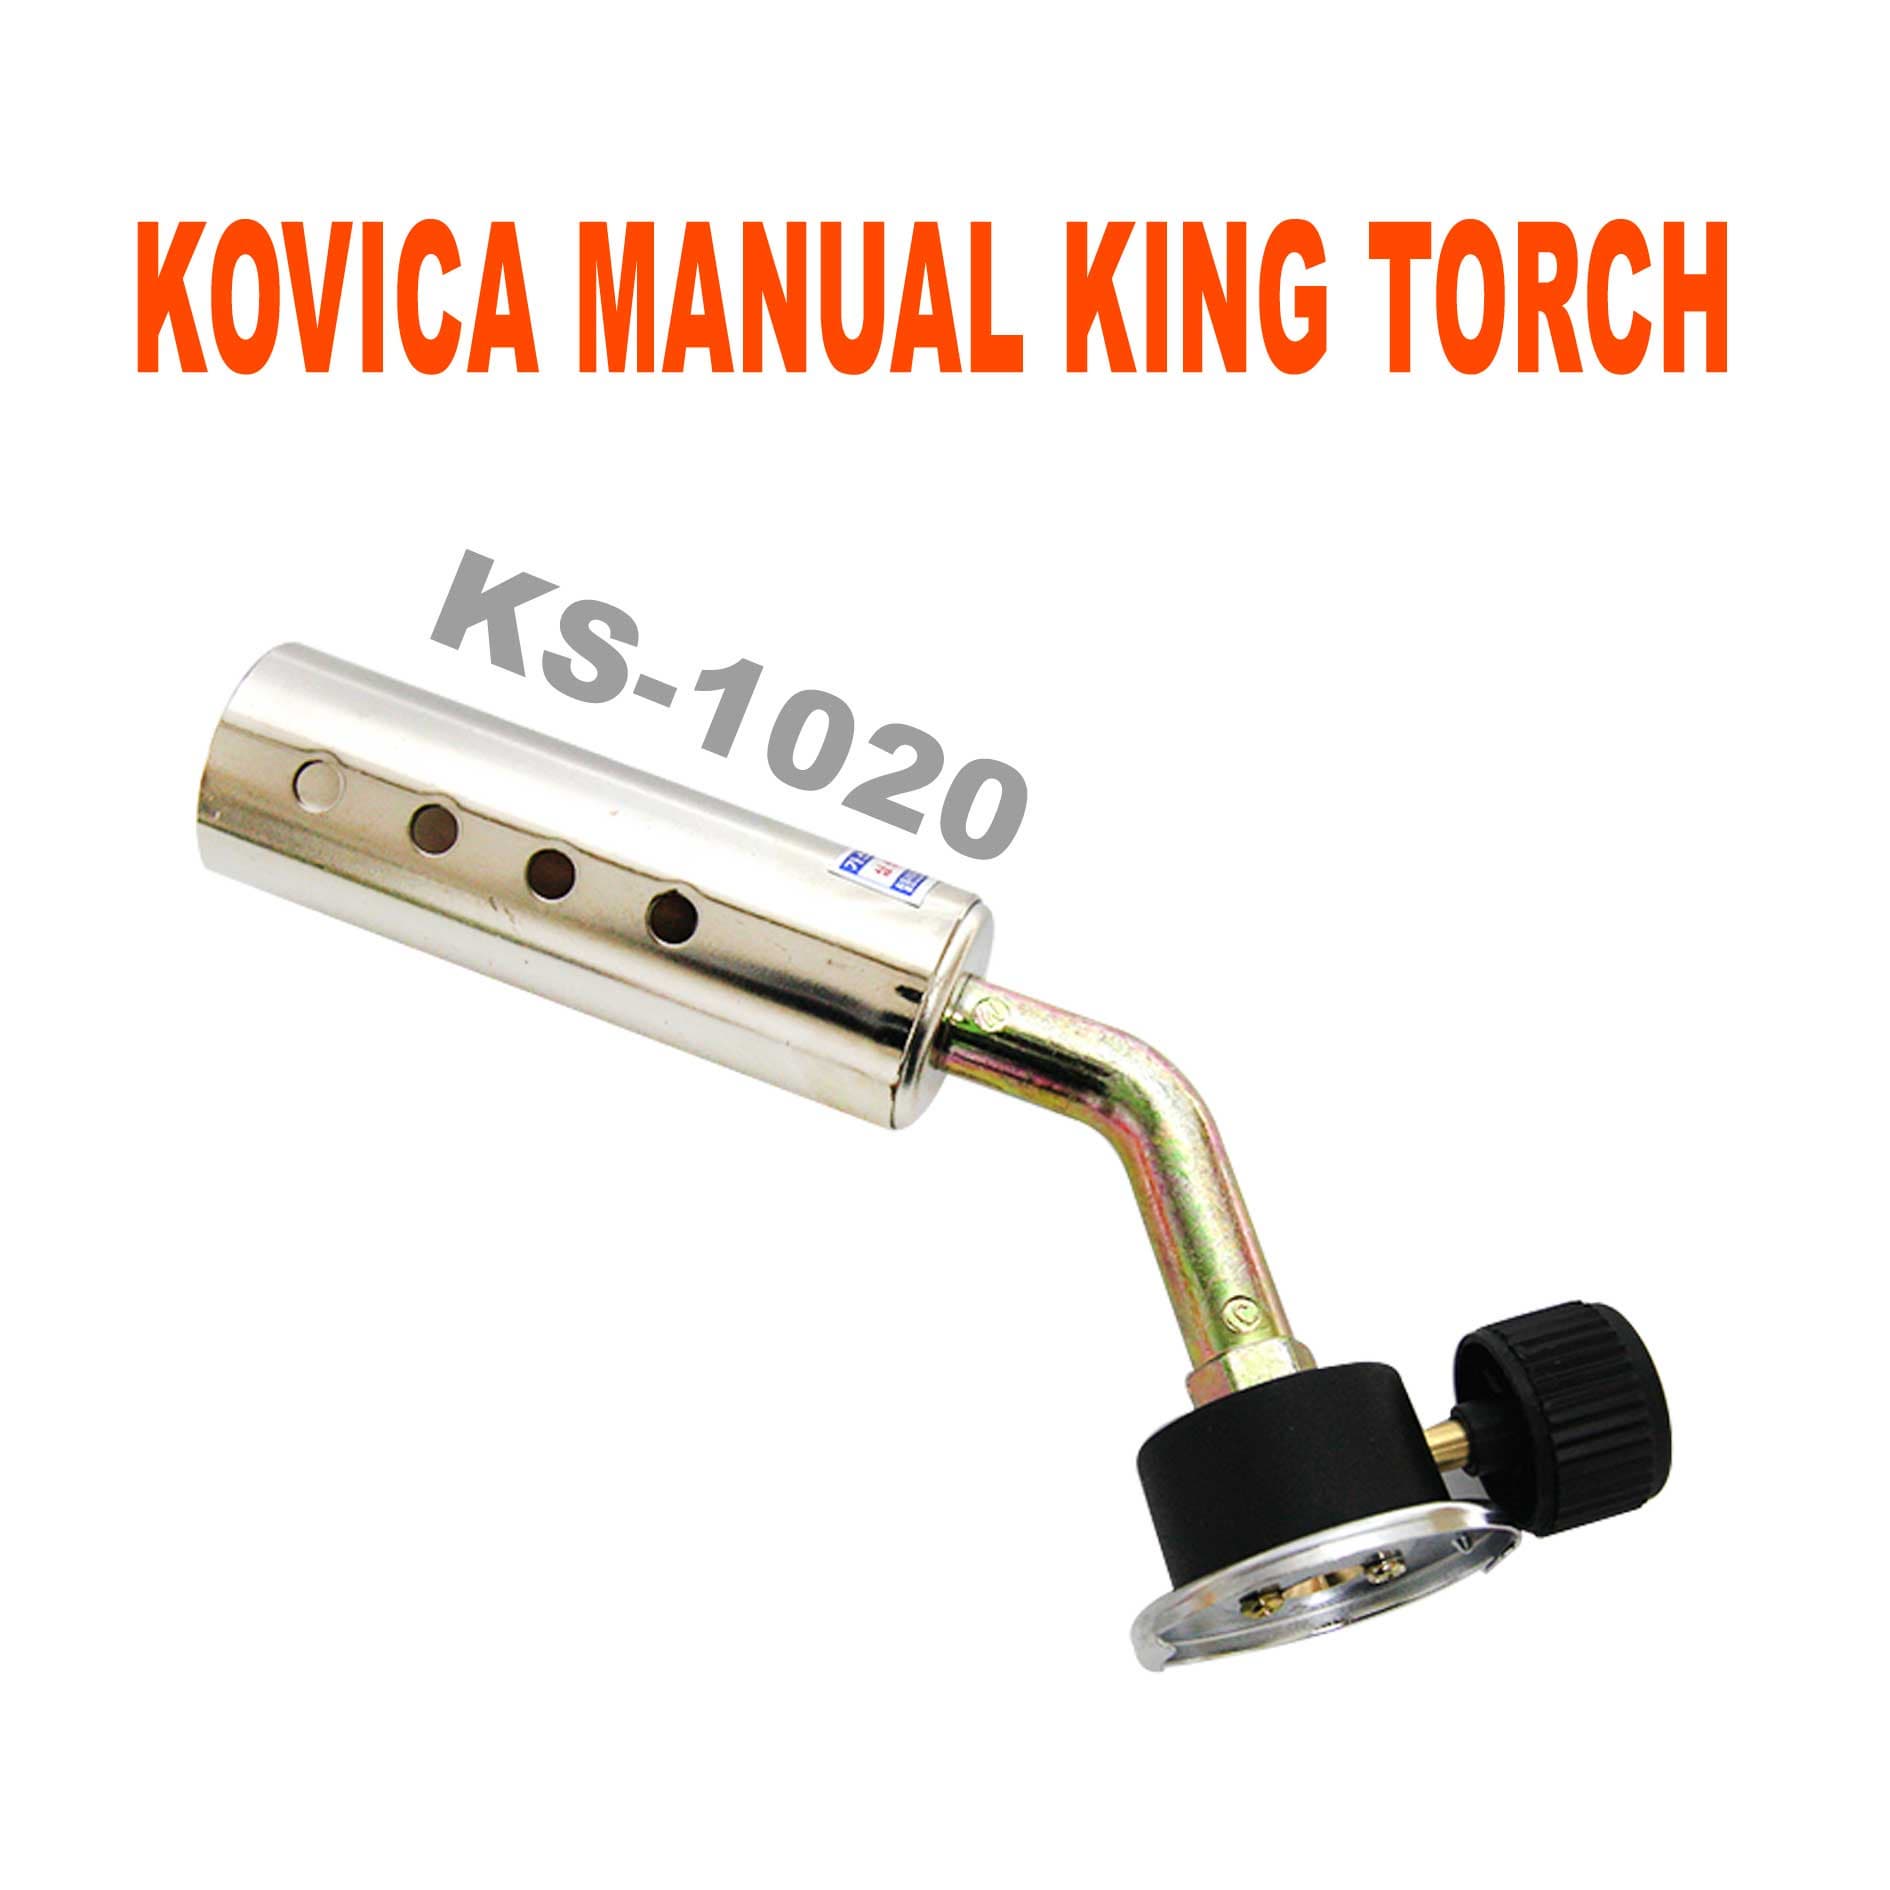 Torch add. Gas Torch Series manual. Ks1020.